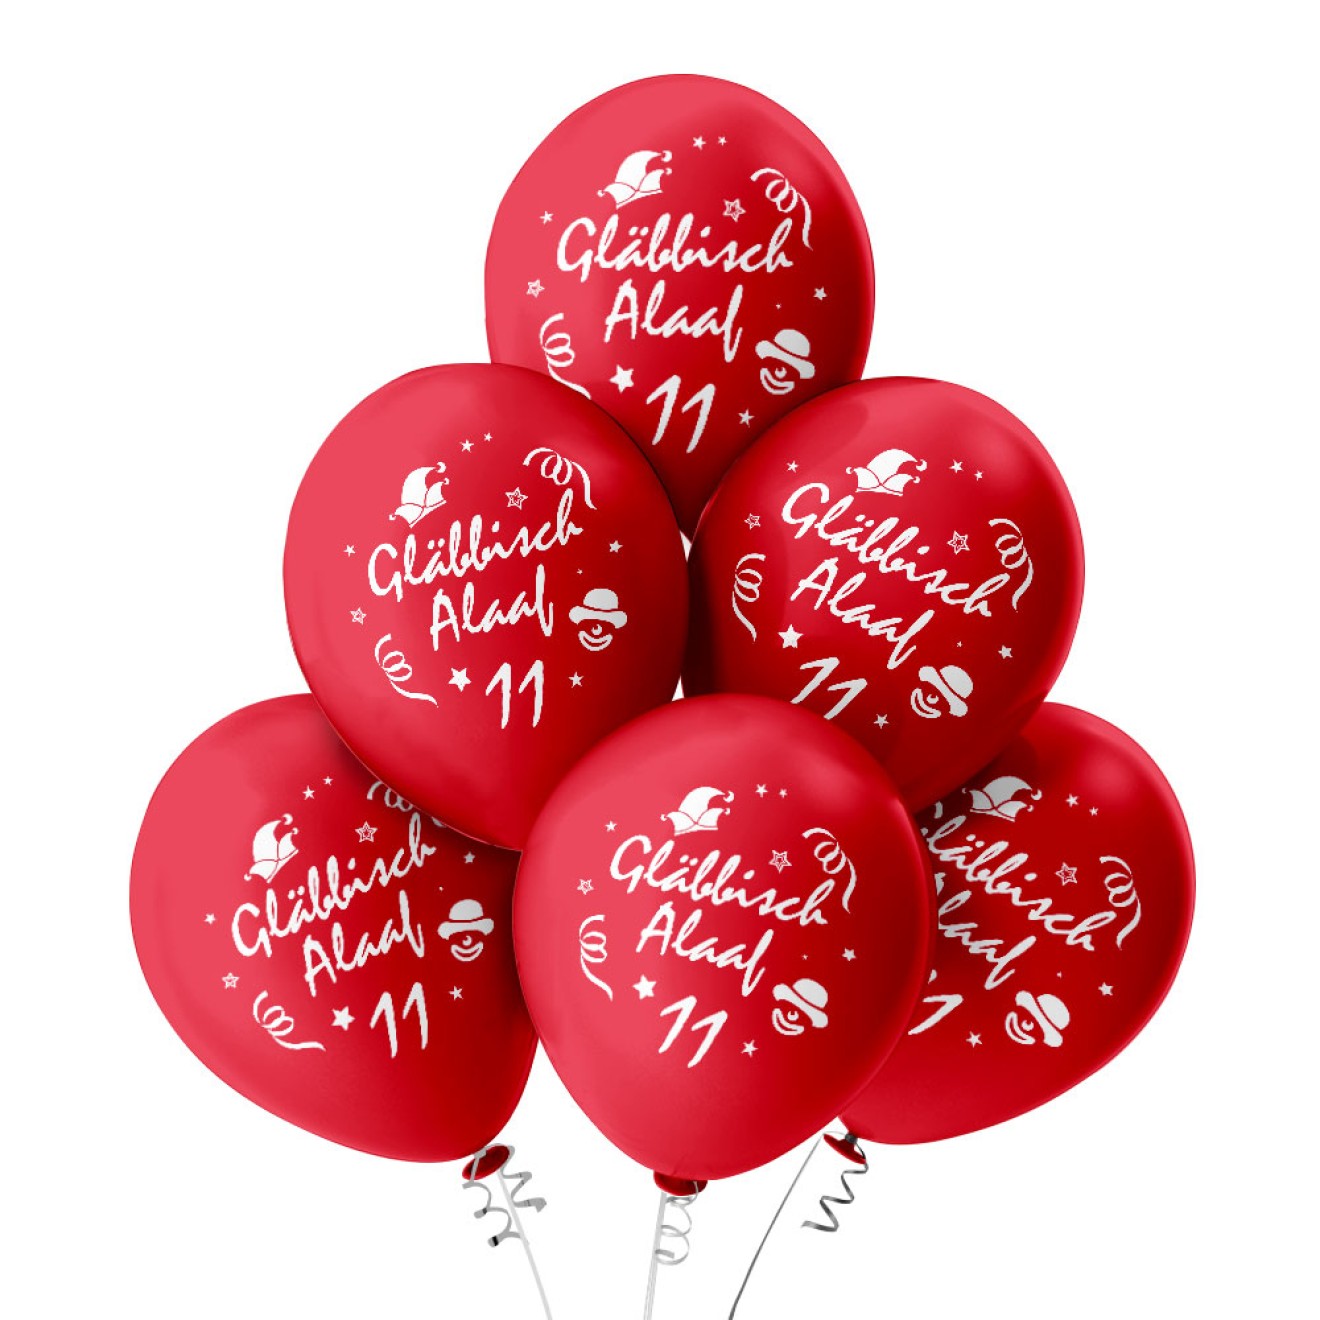 Luftballons Karneval: Gläbbisch Alaaf